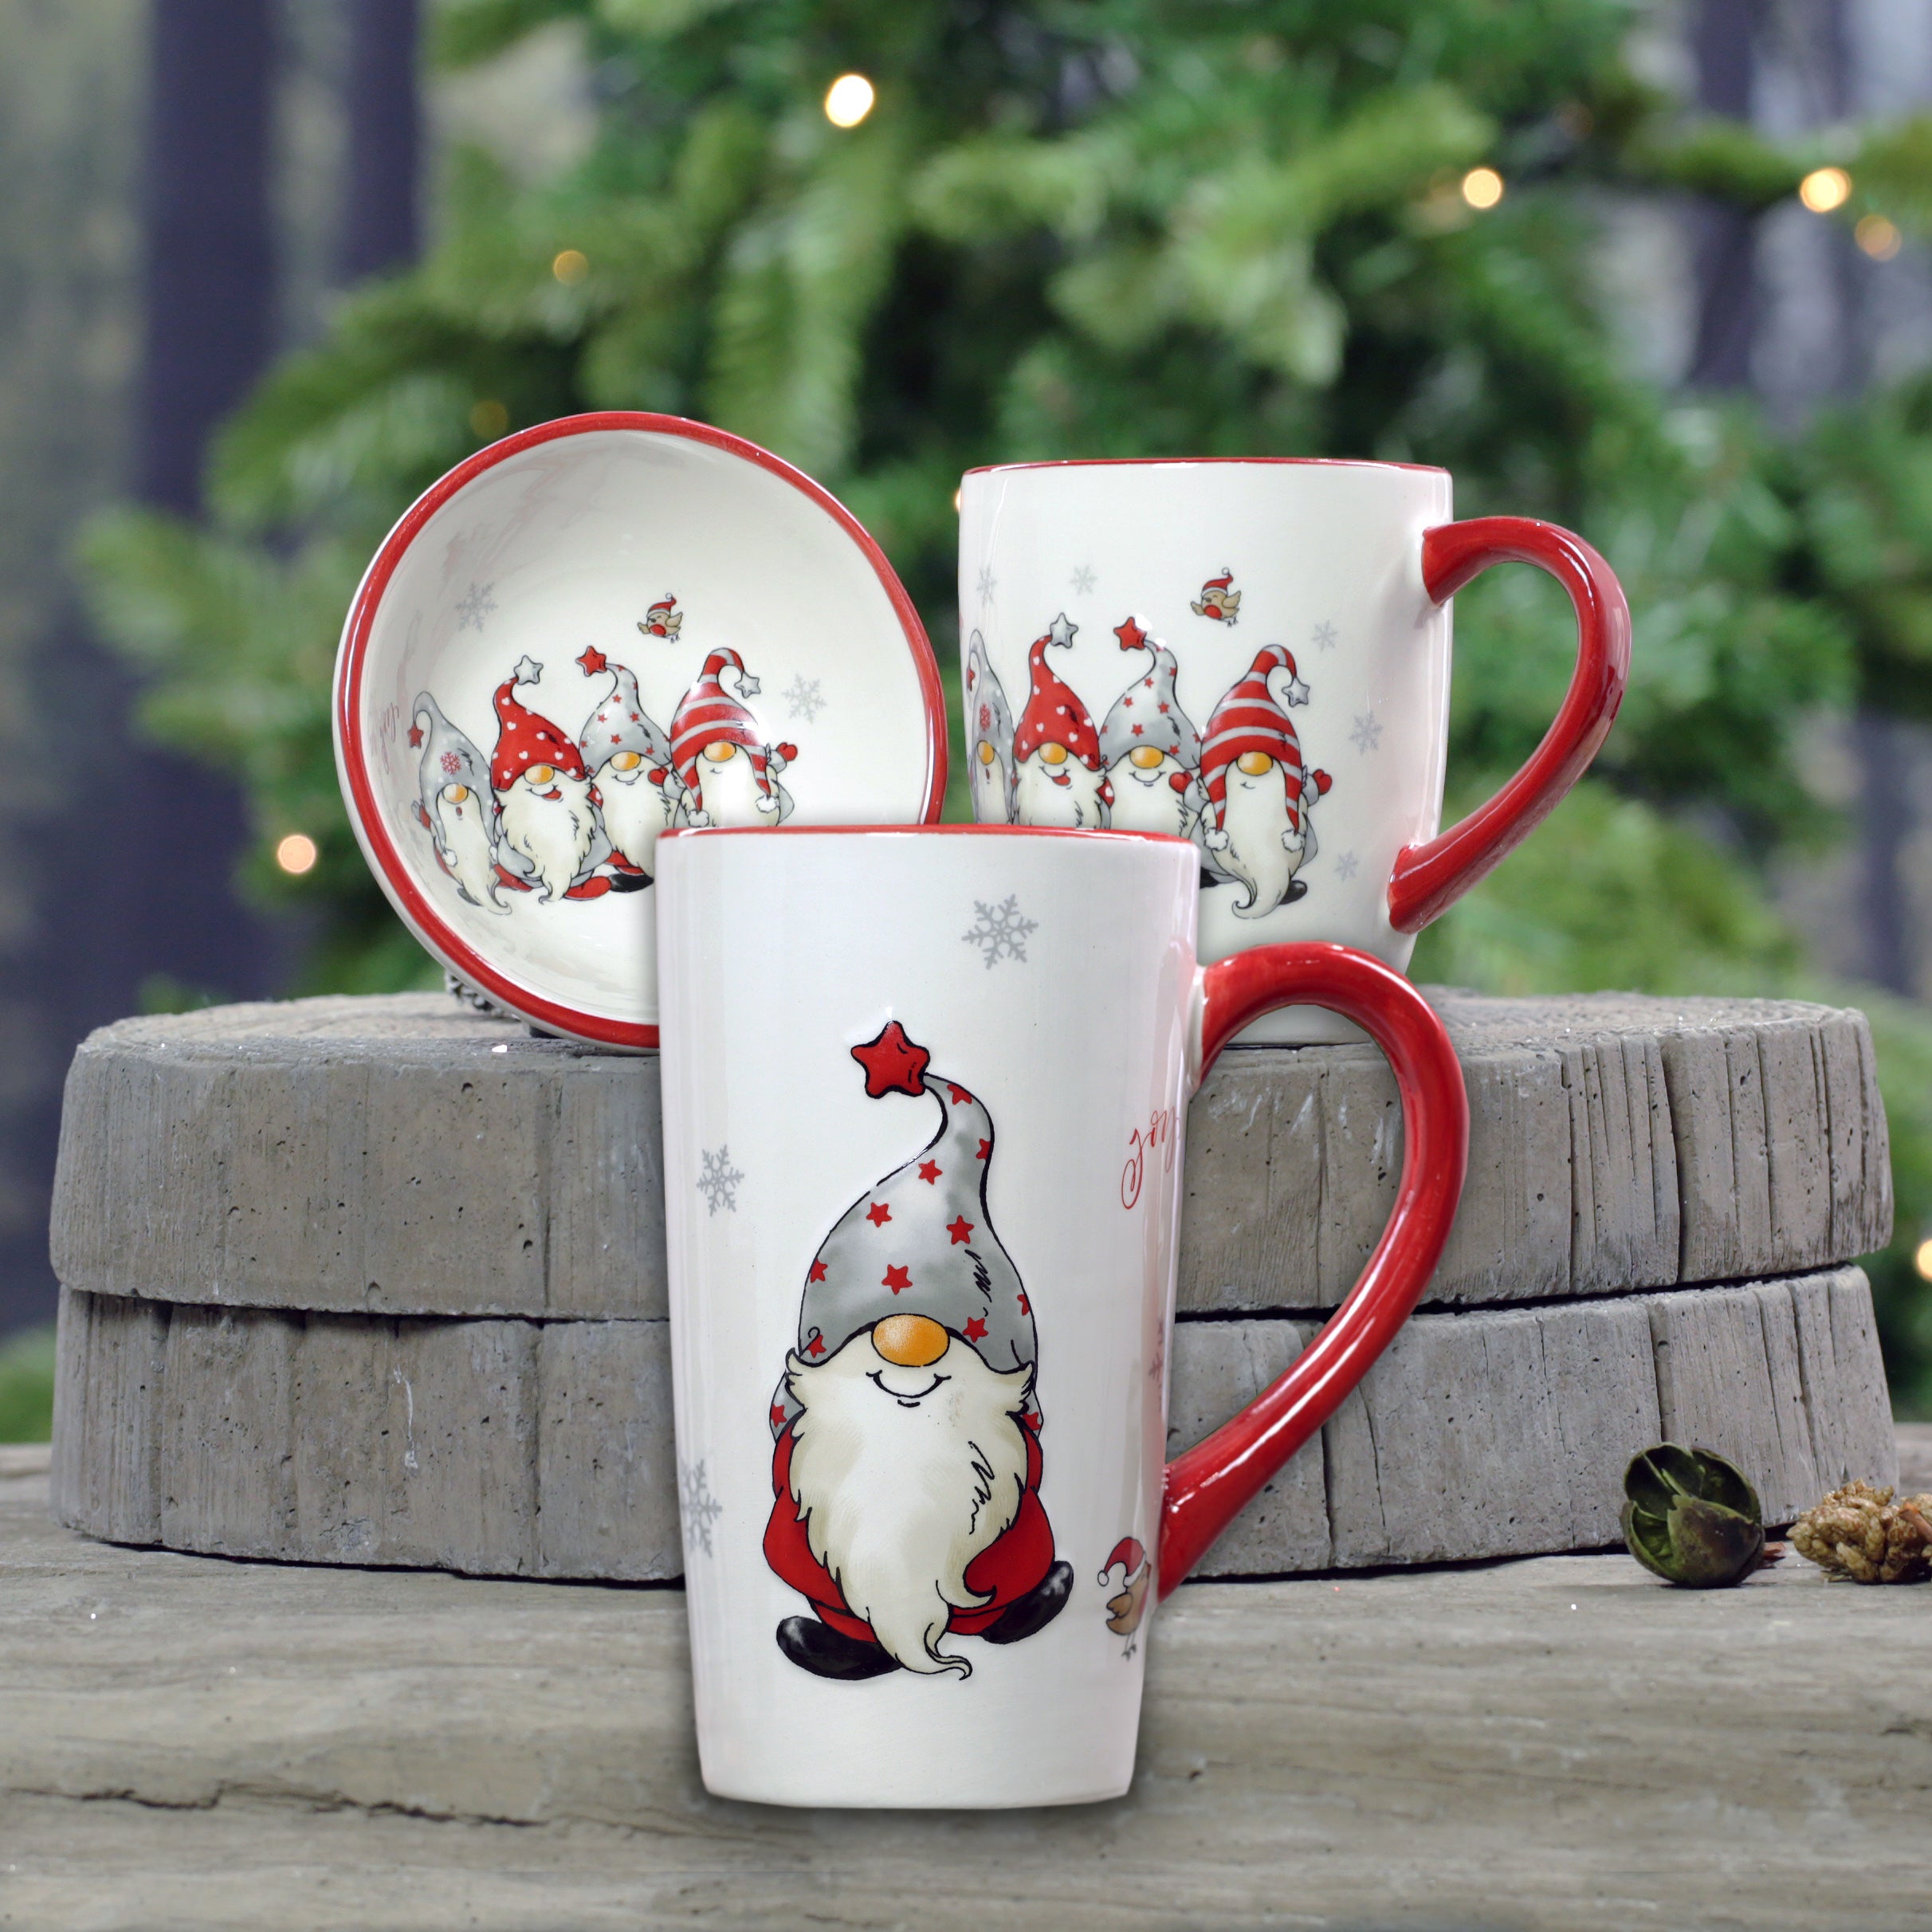 Christmas Gnome Mugs and Nibbles Bowl